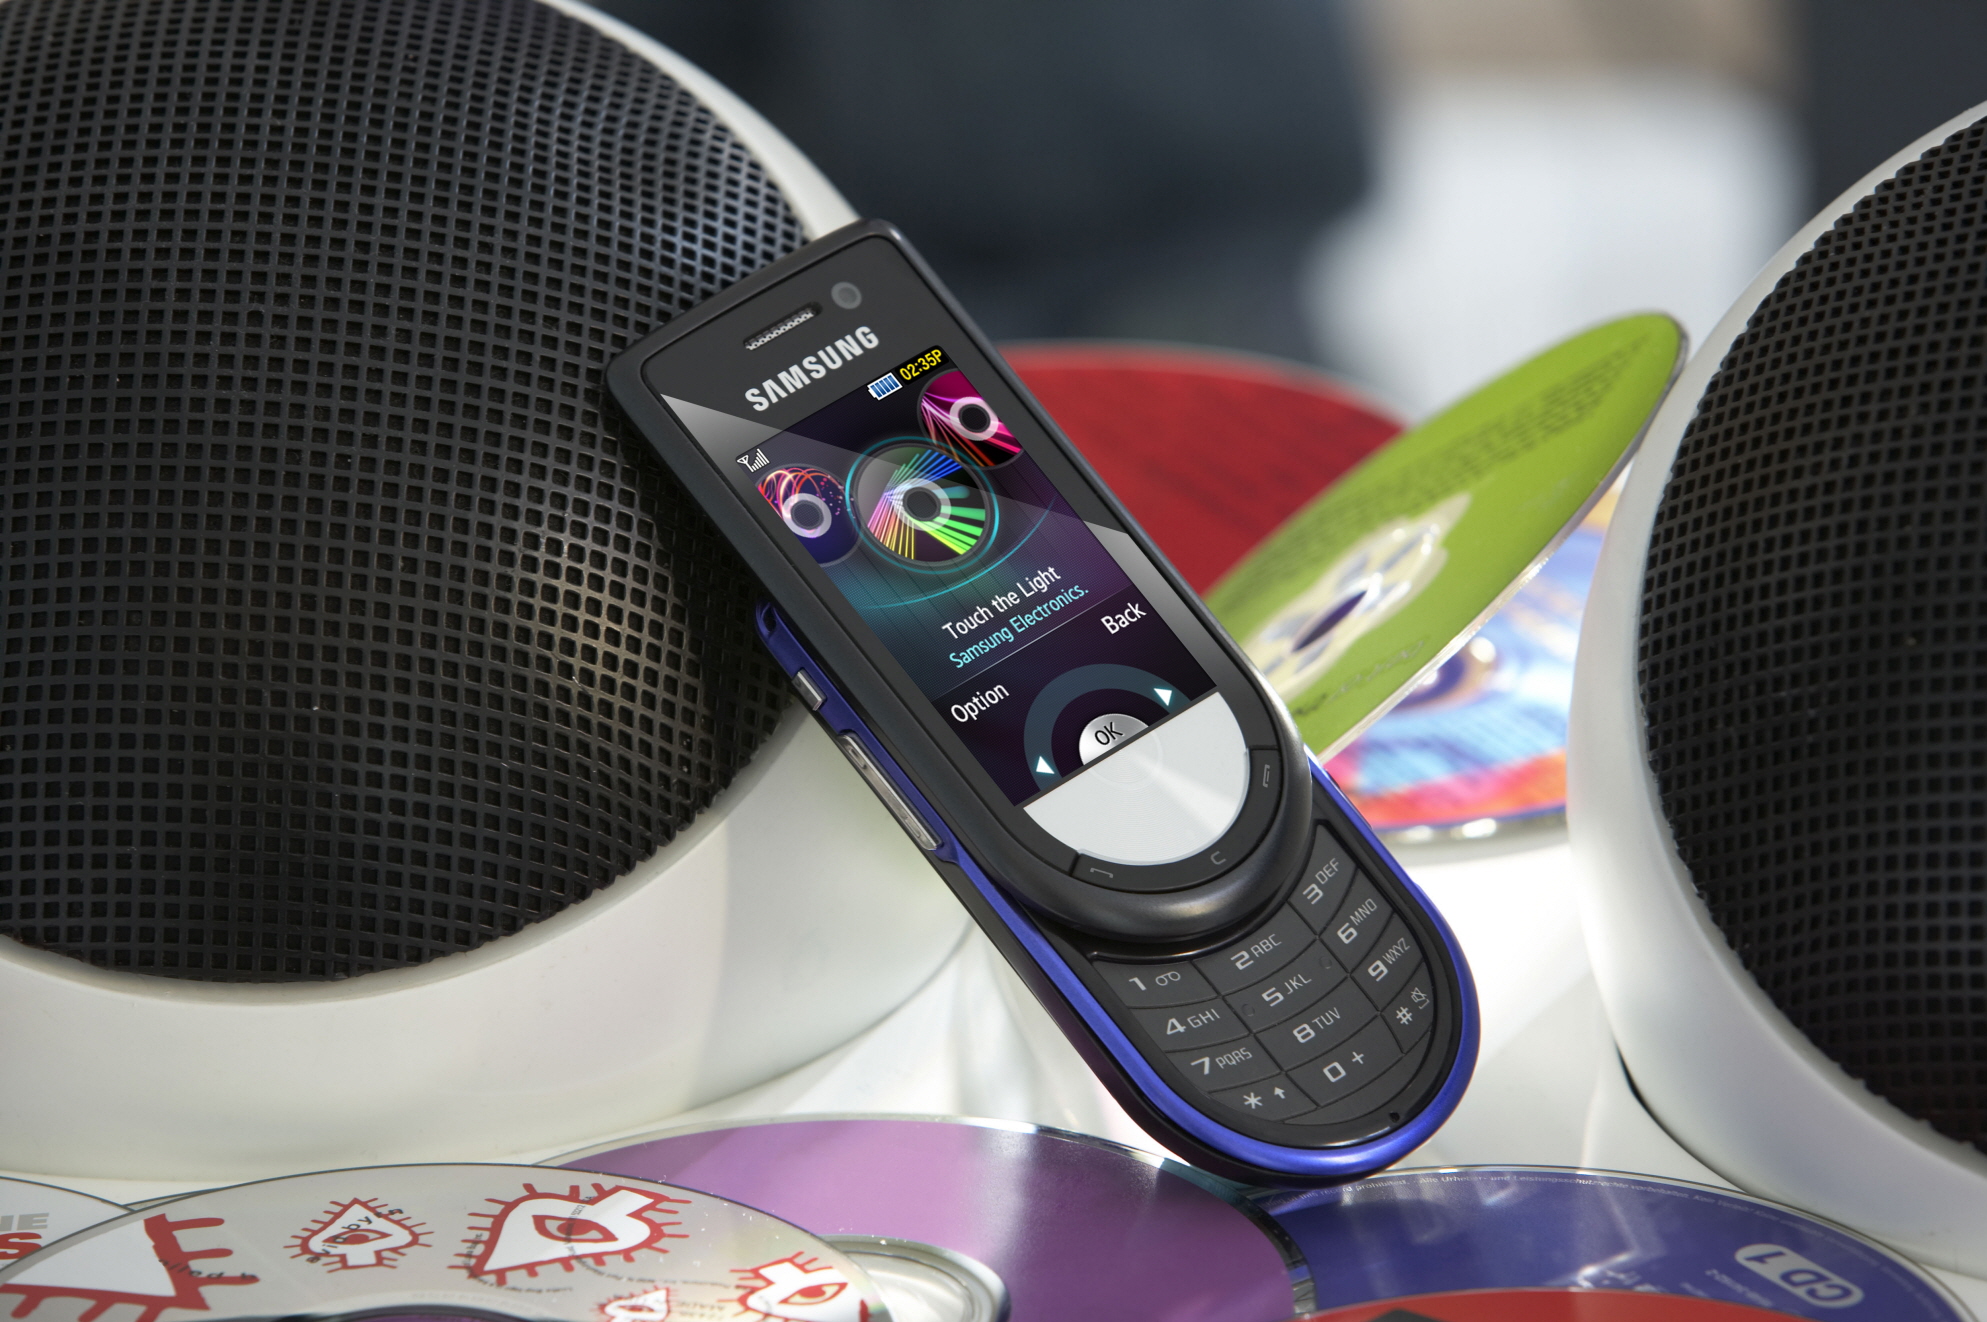 Лучшие смартфоны для музыки. Samsung Beat Disc m6710. Музыкальный телефон. Нокиа музыкальный телефон. DJ Phone Samsung m7600.